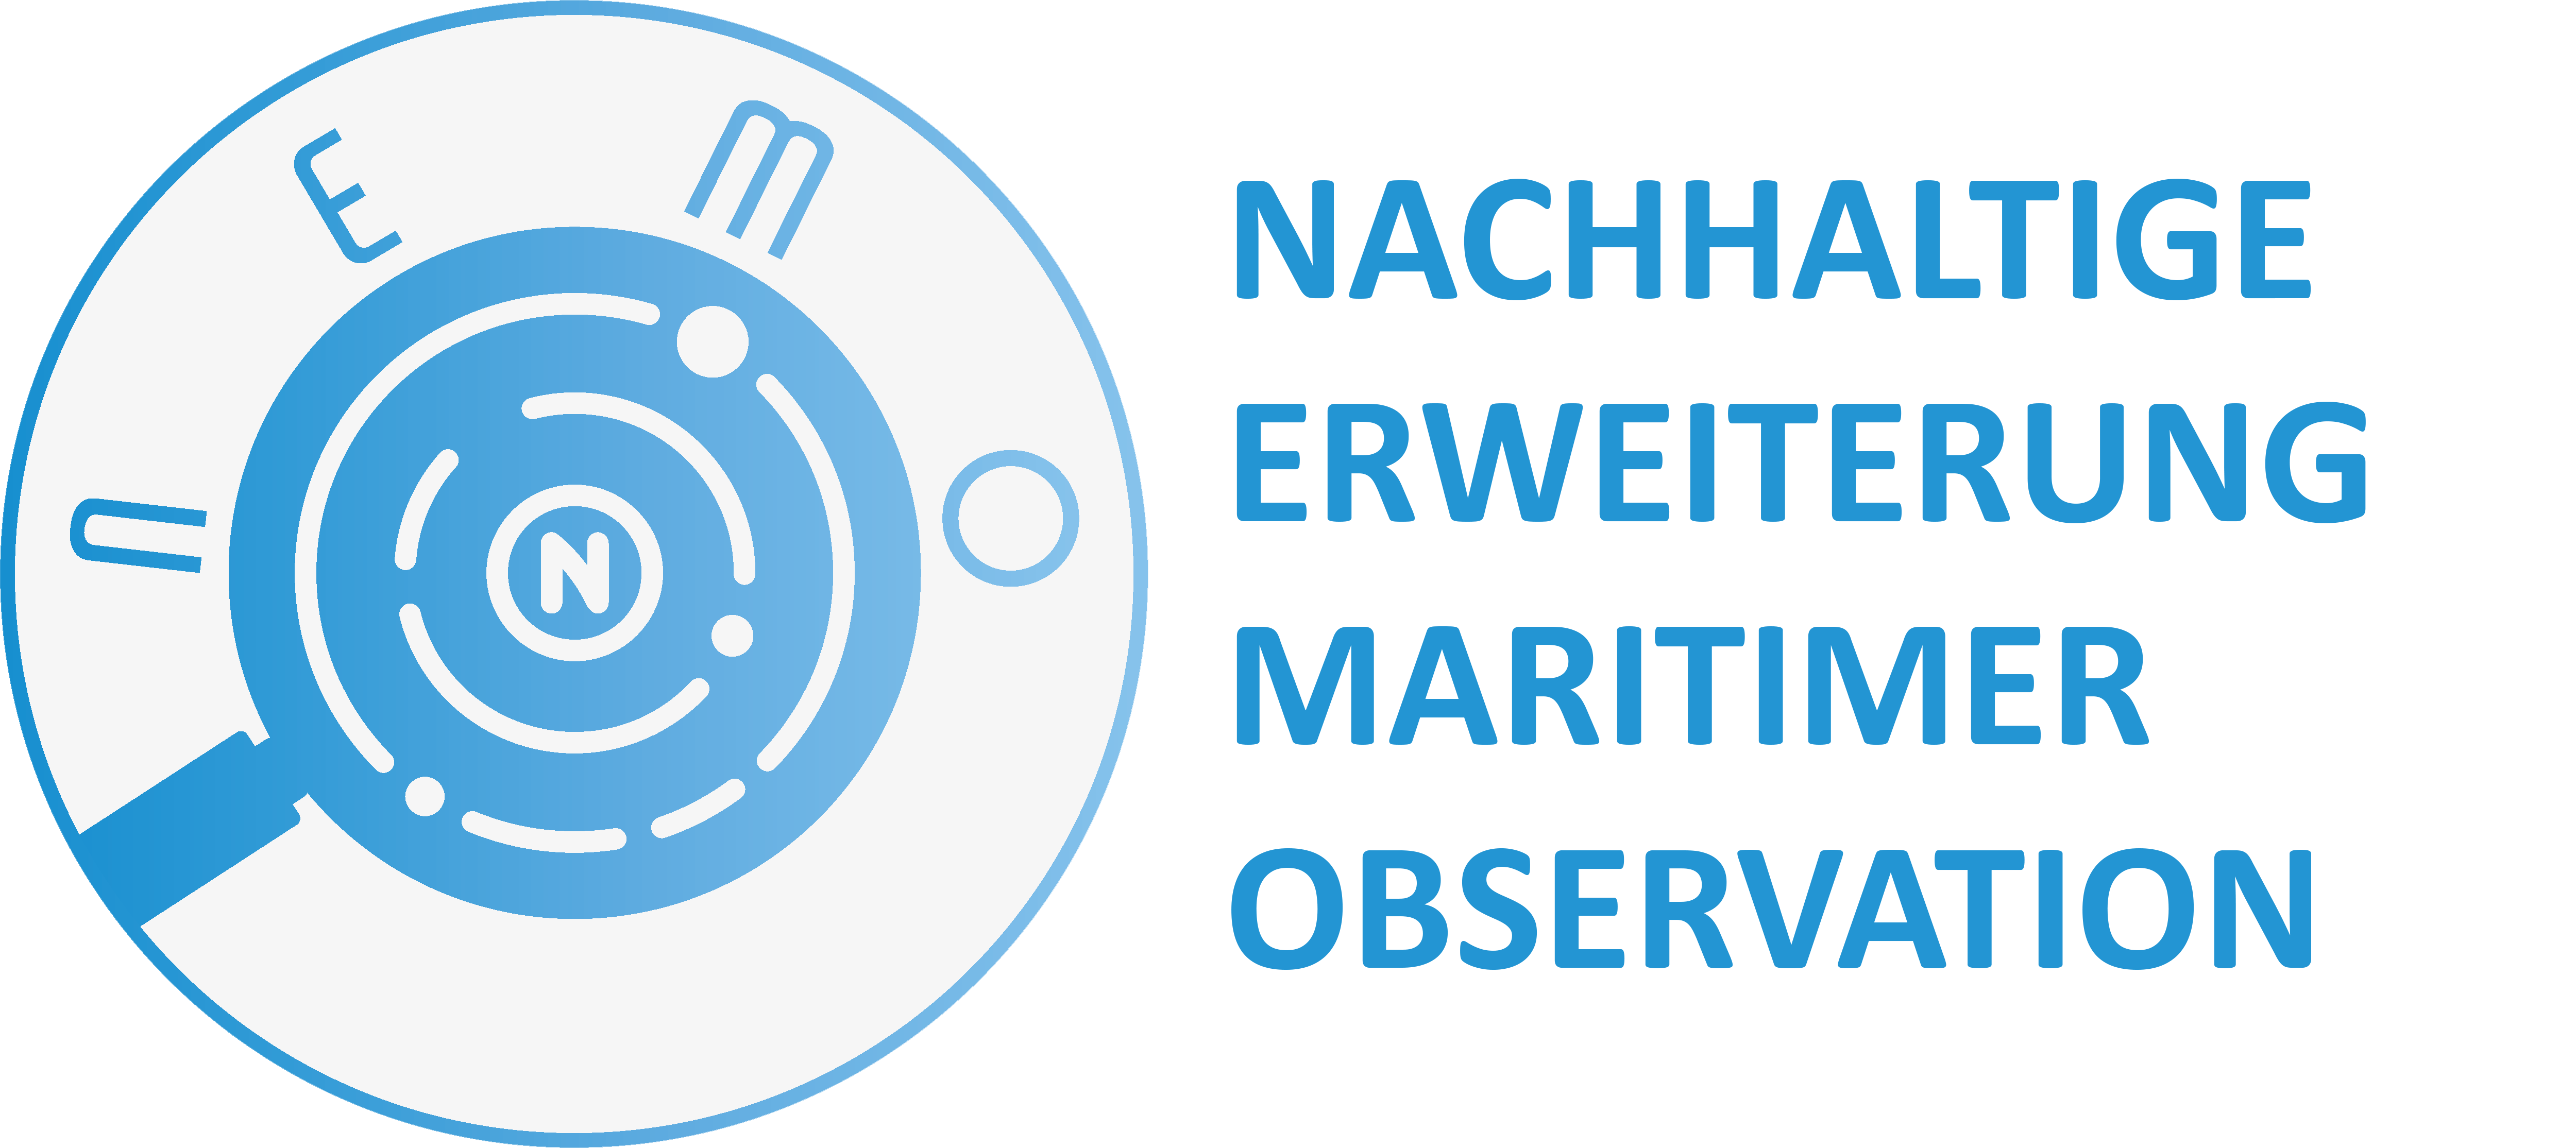 NEMO - Nachhaltige Erweiterung Maritimer Observation